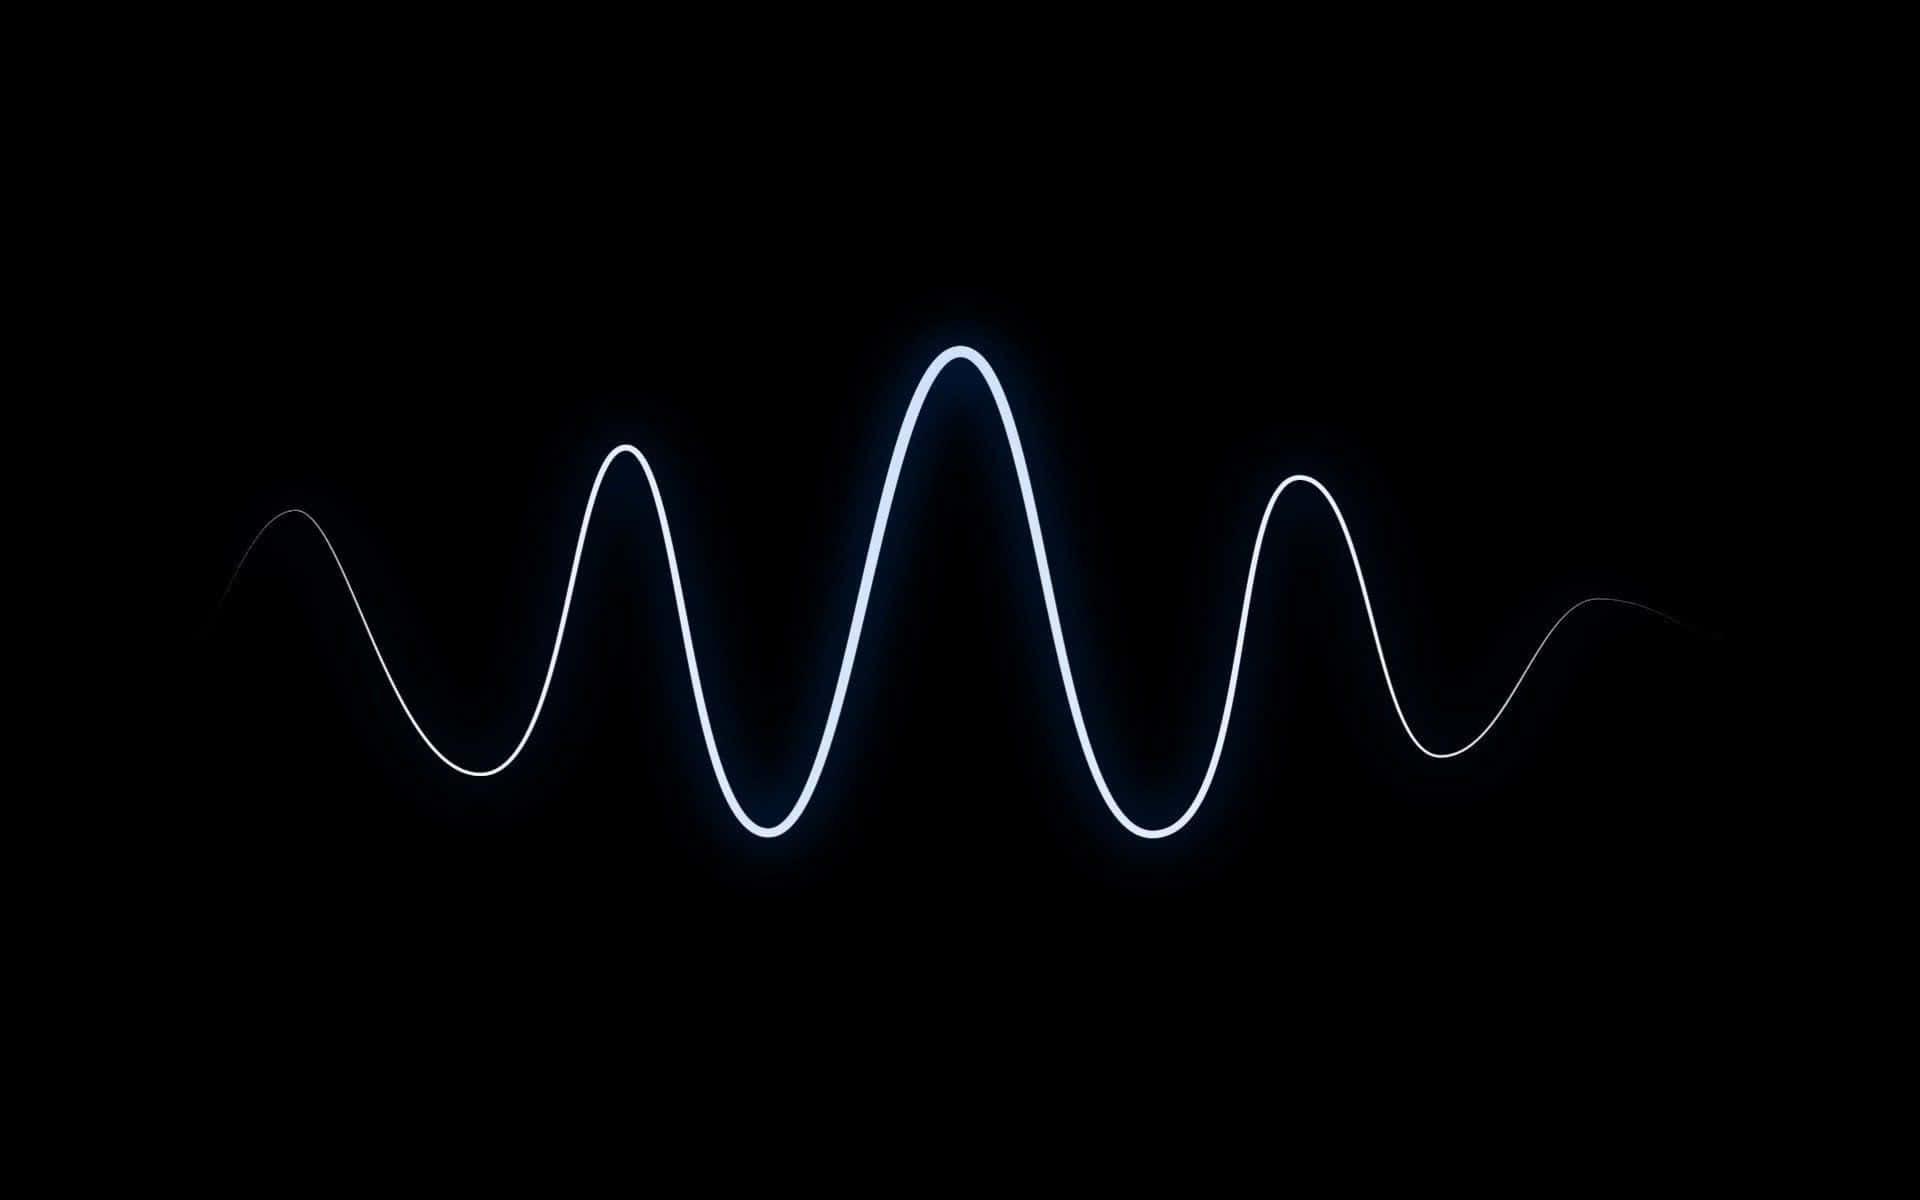 Обои без звука. Звуковая волна. Волны звука. Звуковые волны на темном фоне. Звуковая волна на черном фоне.